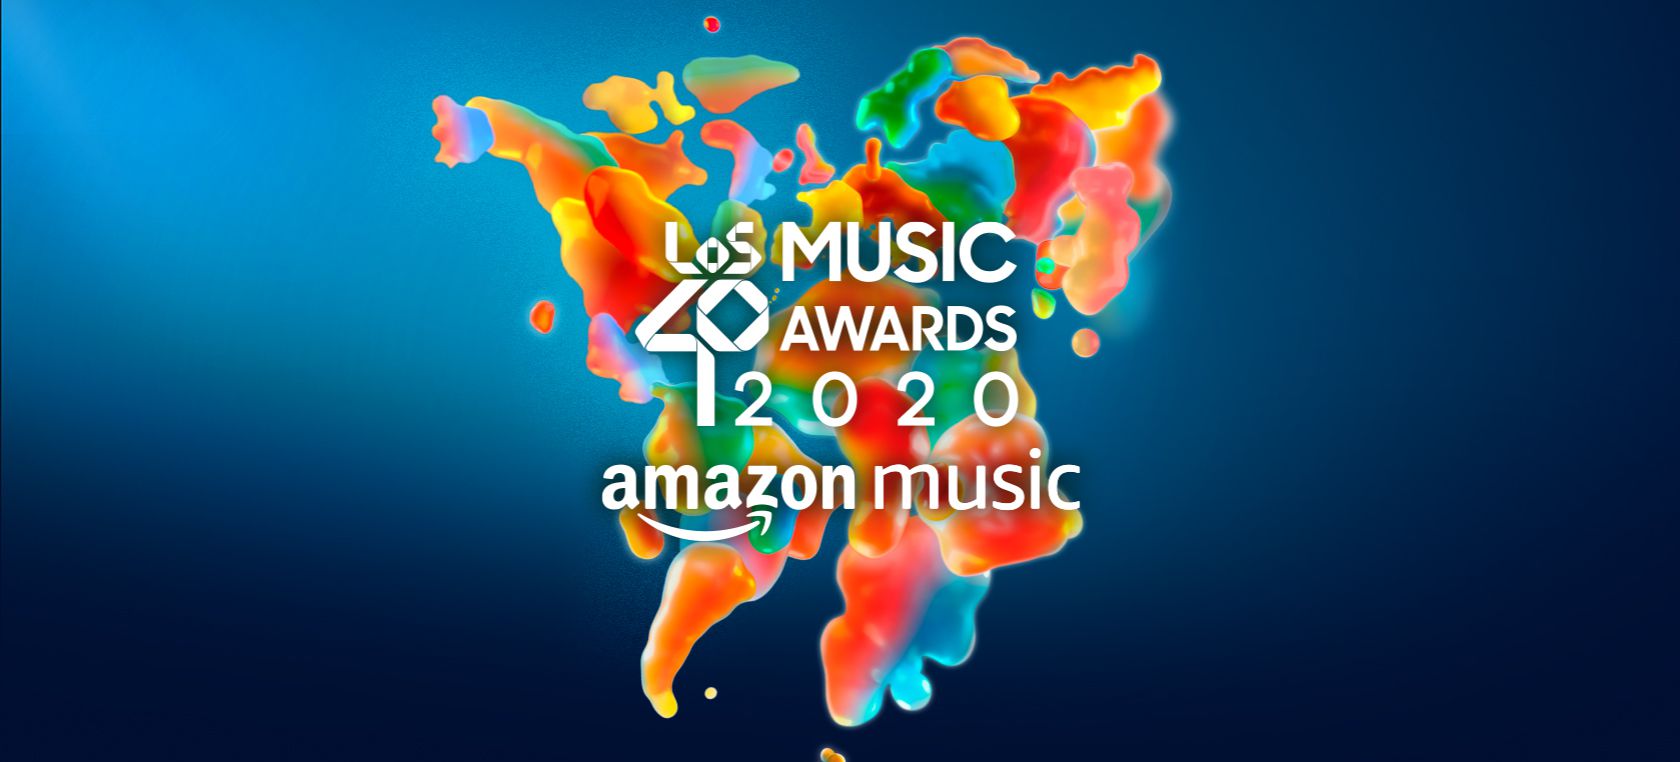 Amazon Music, patrocinador de LOS40 MUSIC AWARDS 2020